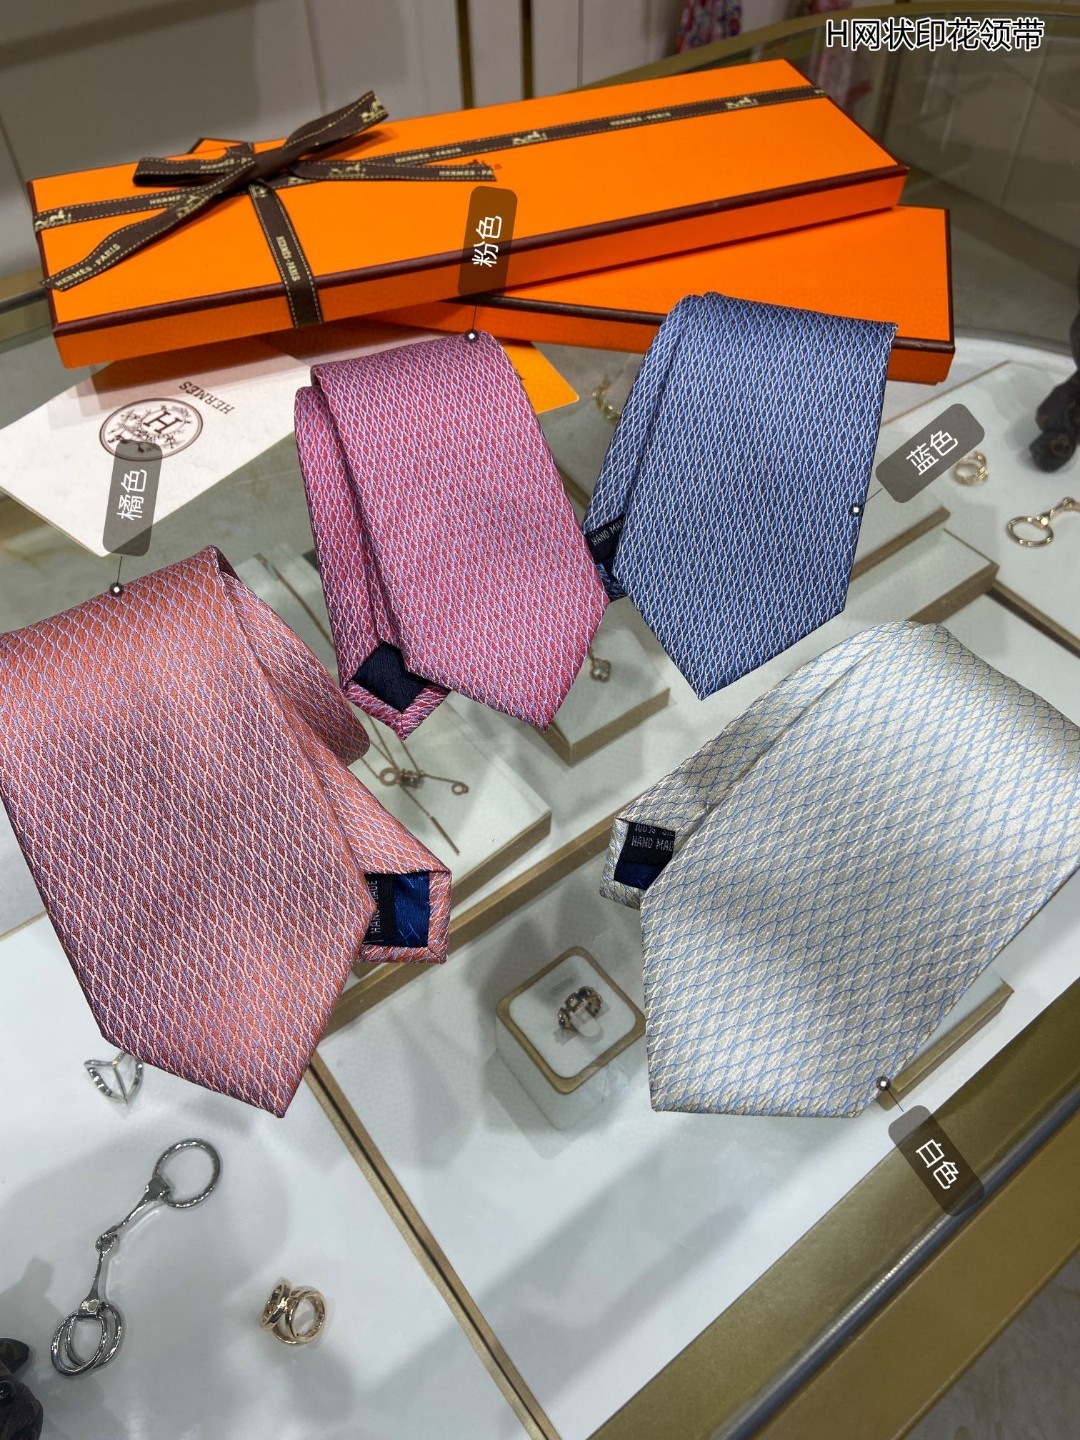 男士新款领带系列H网状印花领带稀有H